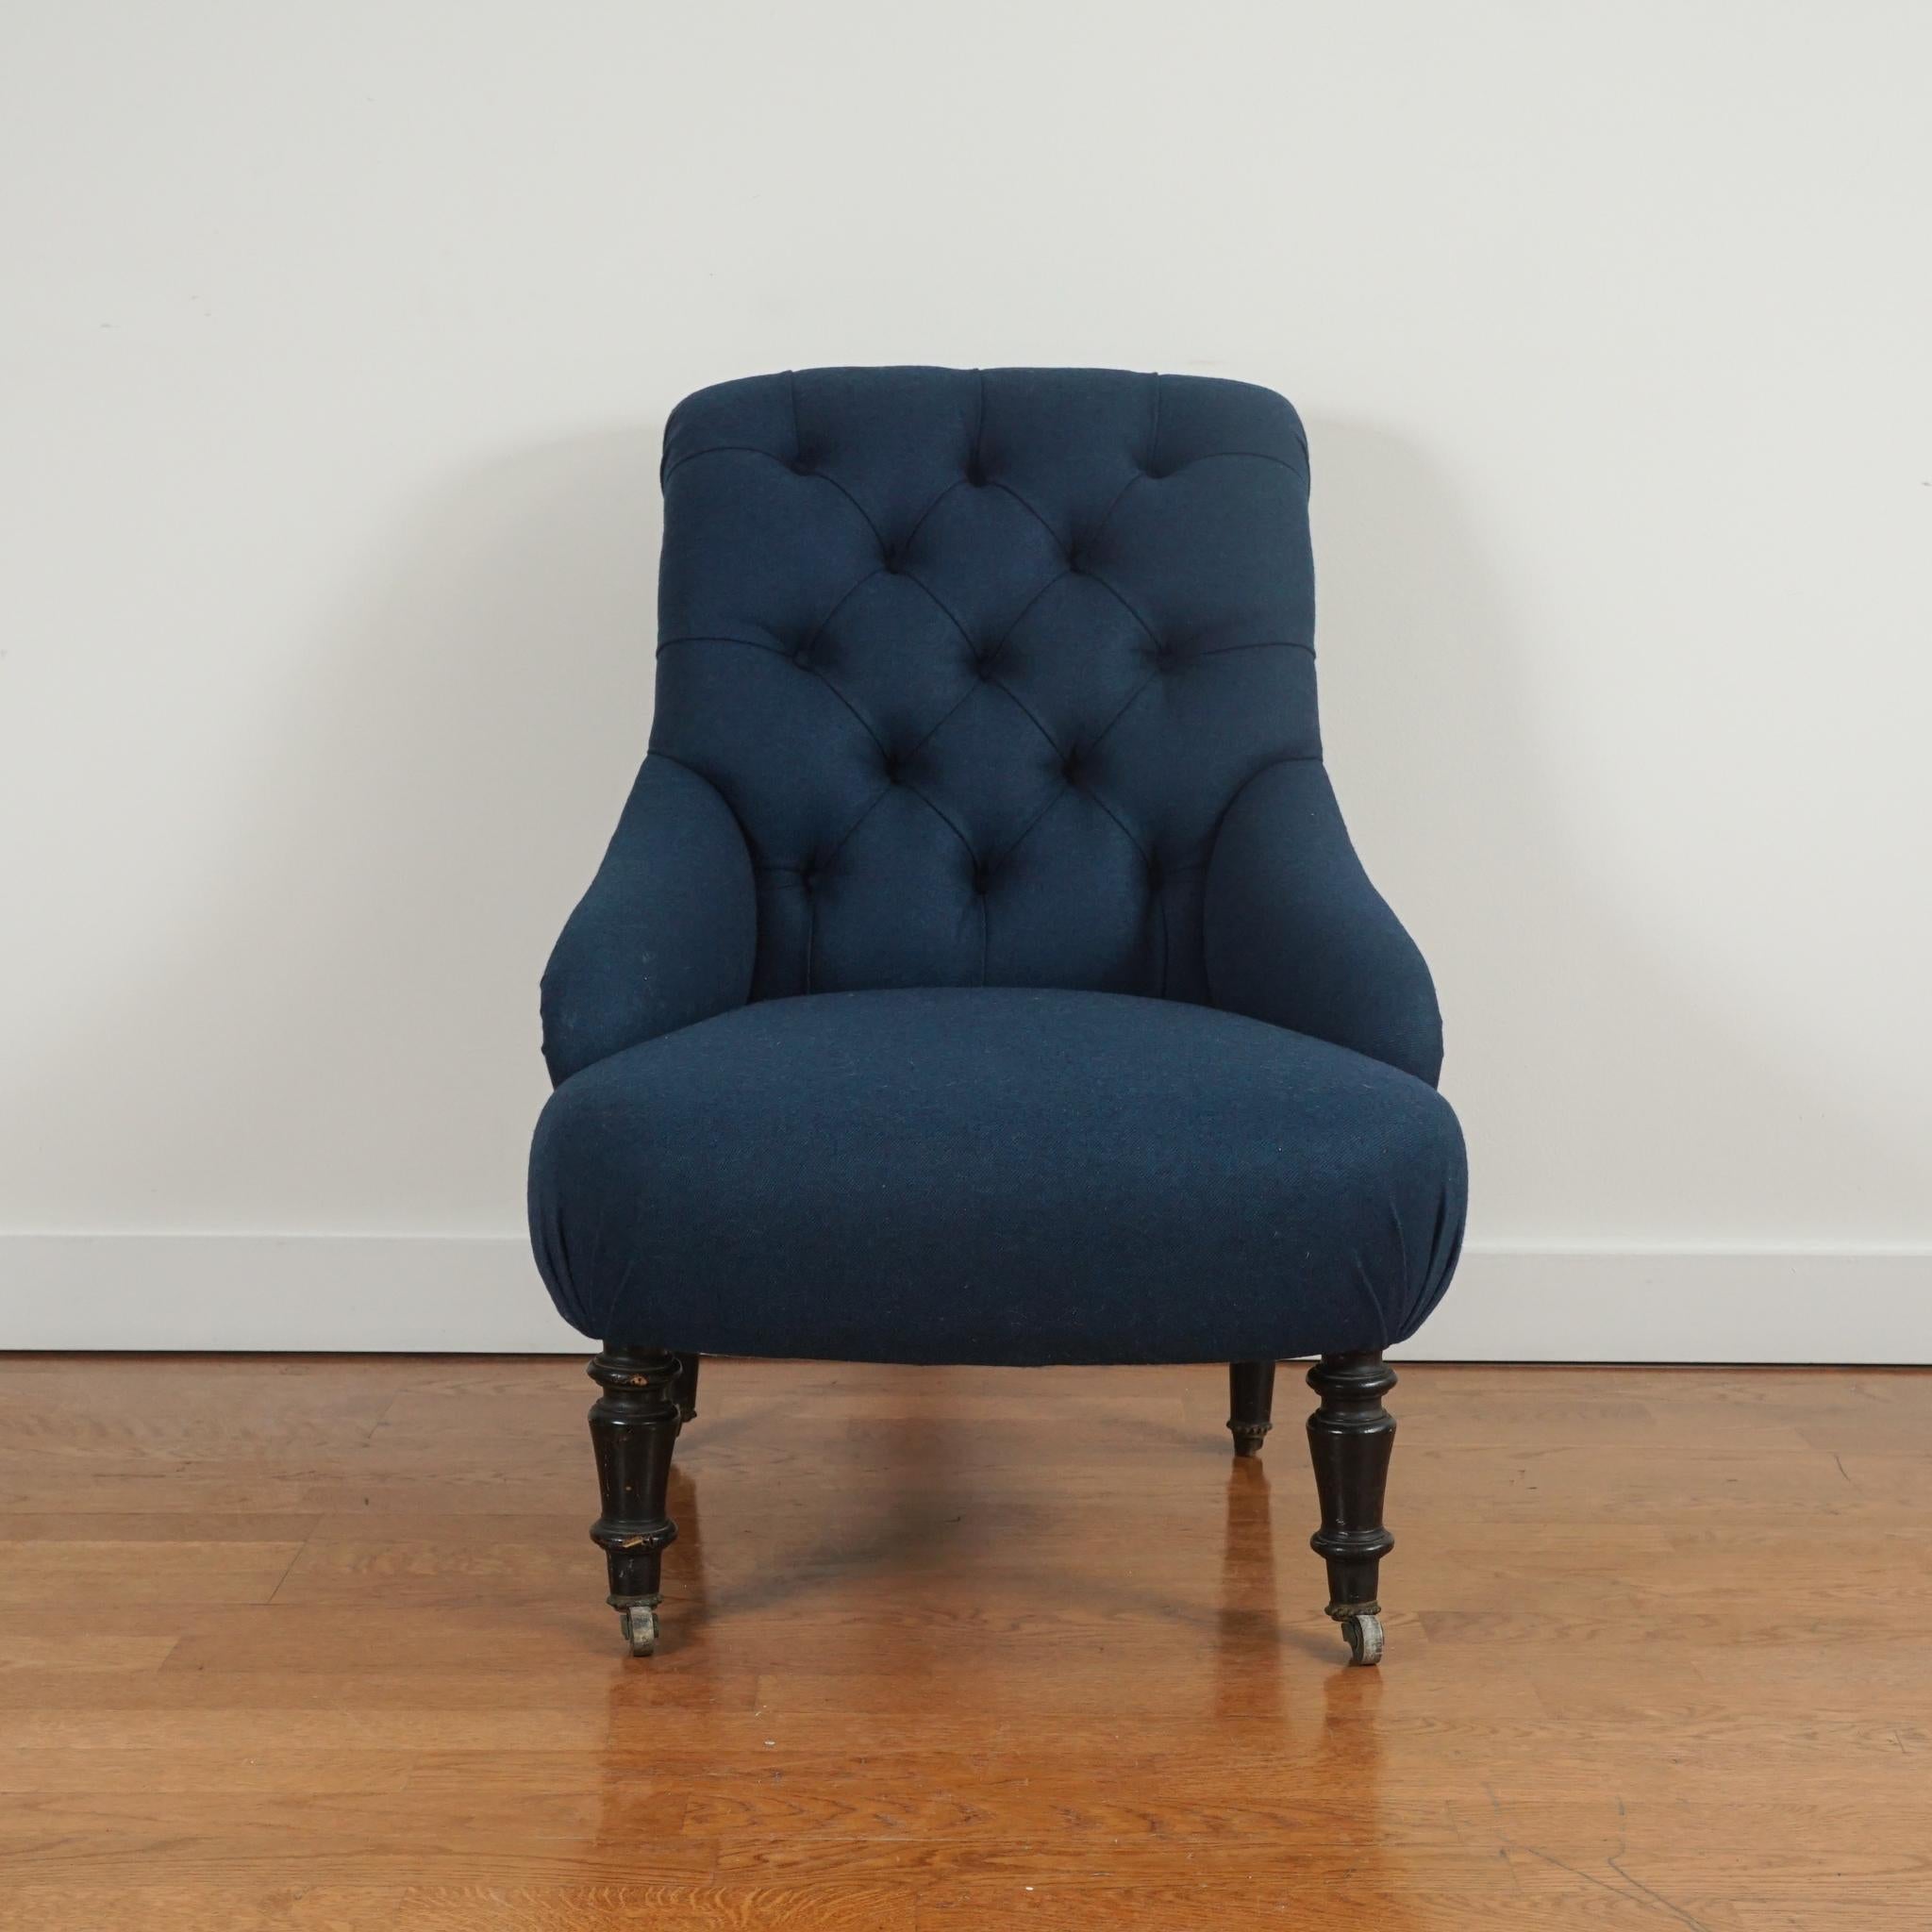 Le fauteuil victorien vintage, présenté ici, a été retapissé dans un mélange de laine vénitienne Coraggio couleur paon. Le dossier touffeté et l'assise serrée sont d'origine, de même que les pieds en bois tourné, qui ont également été restaurés.